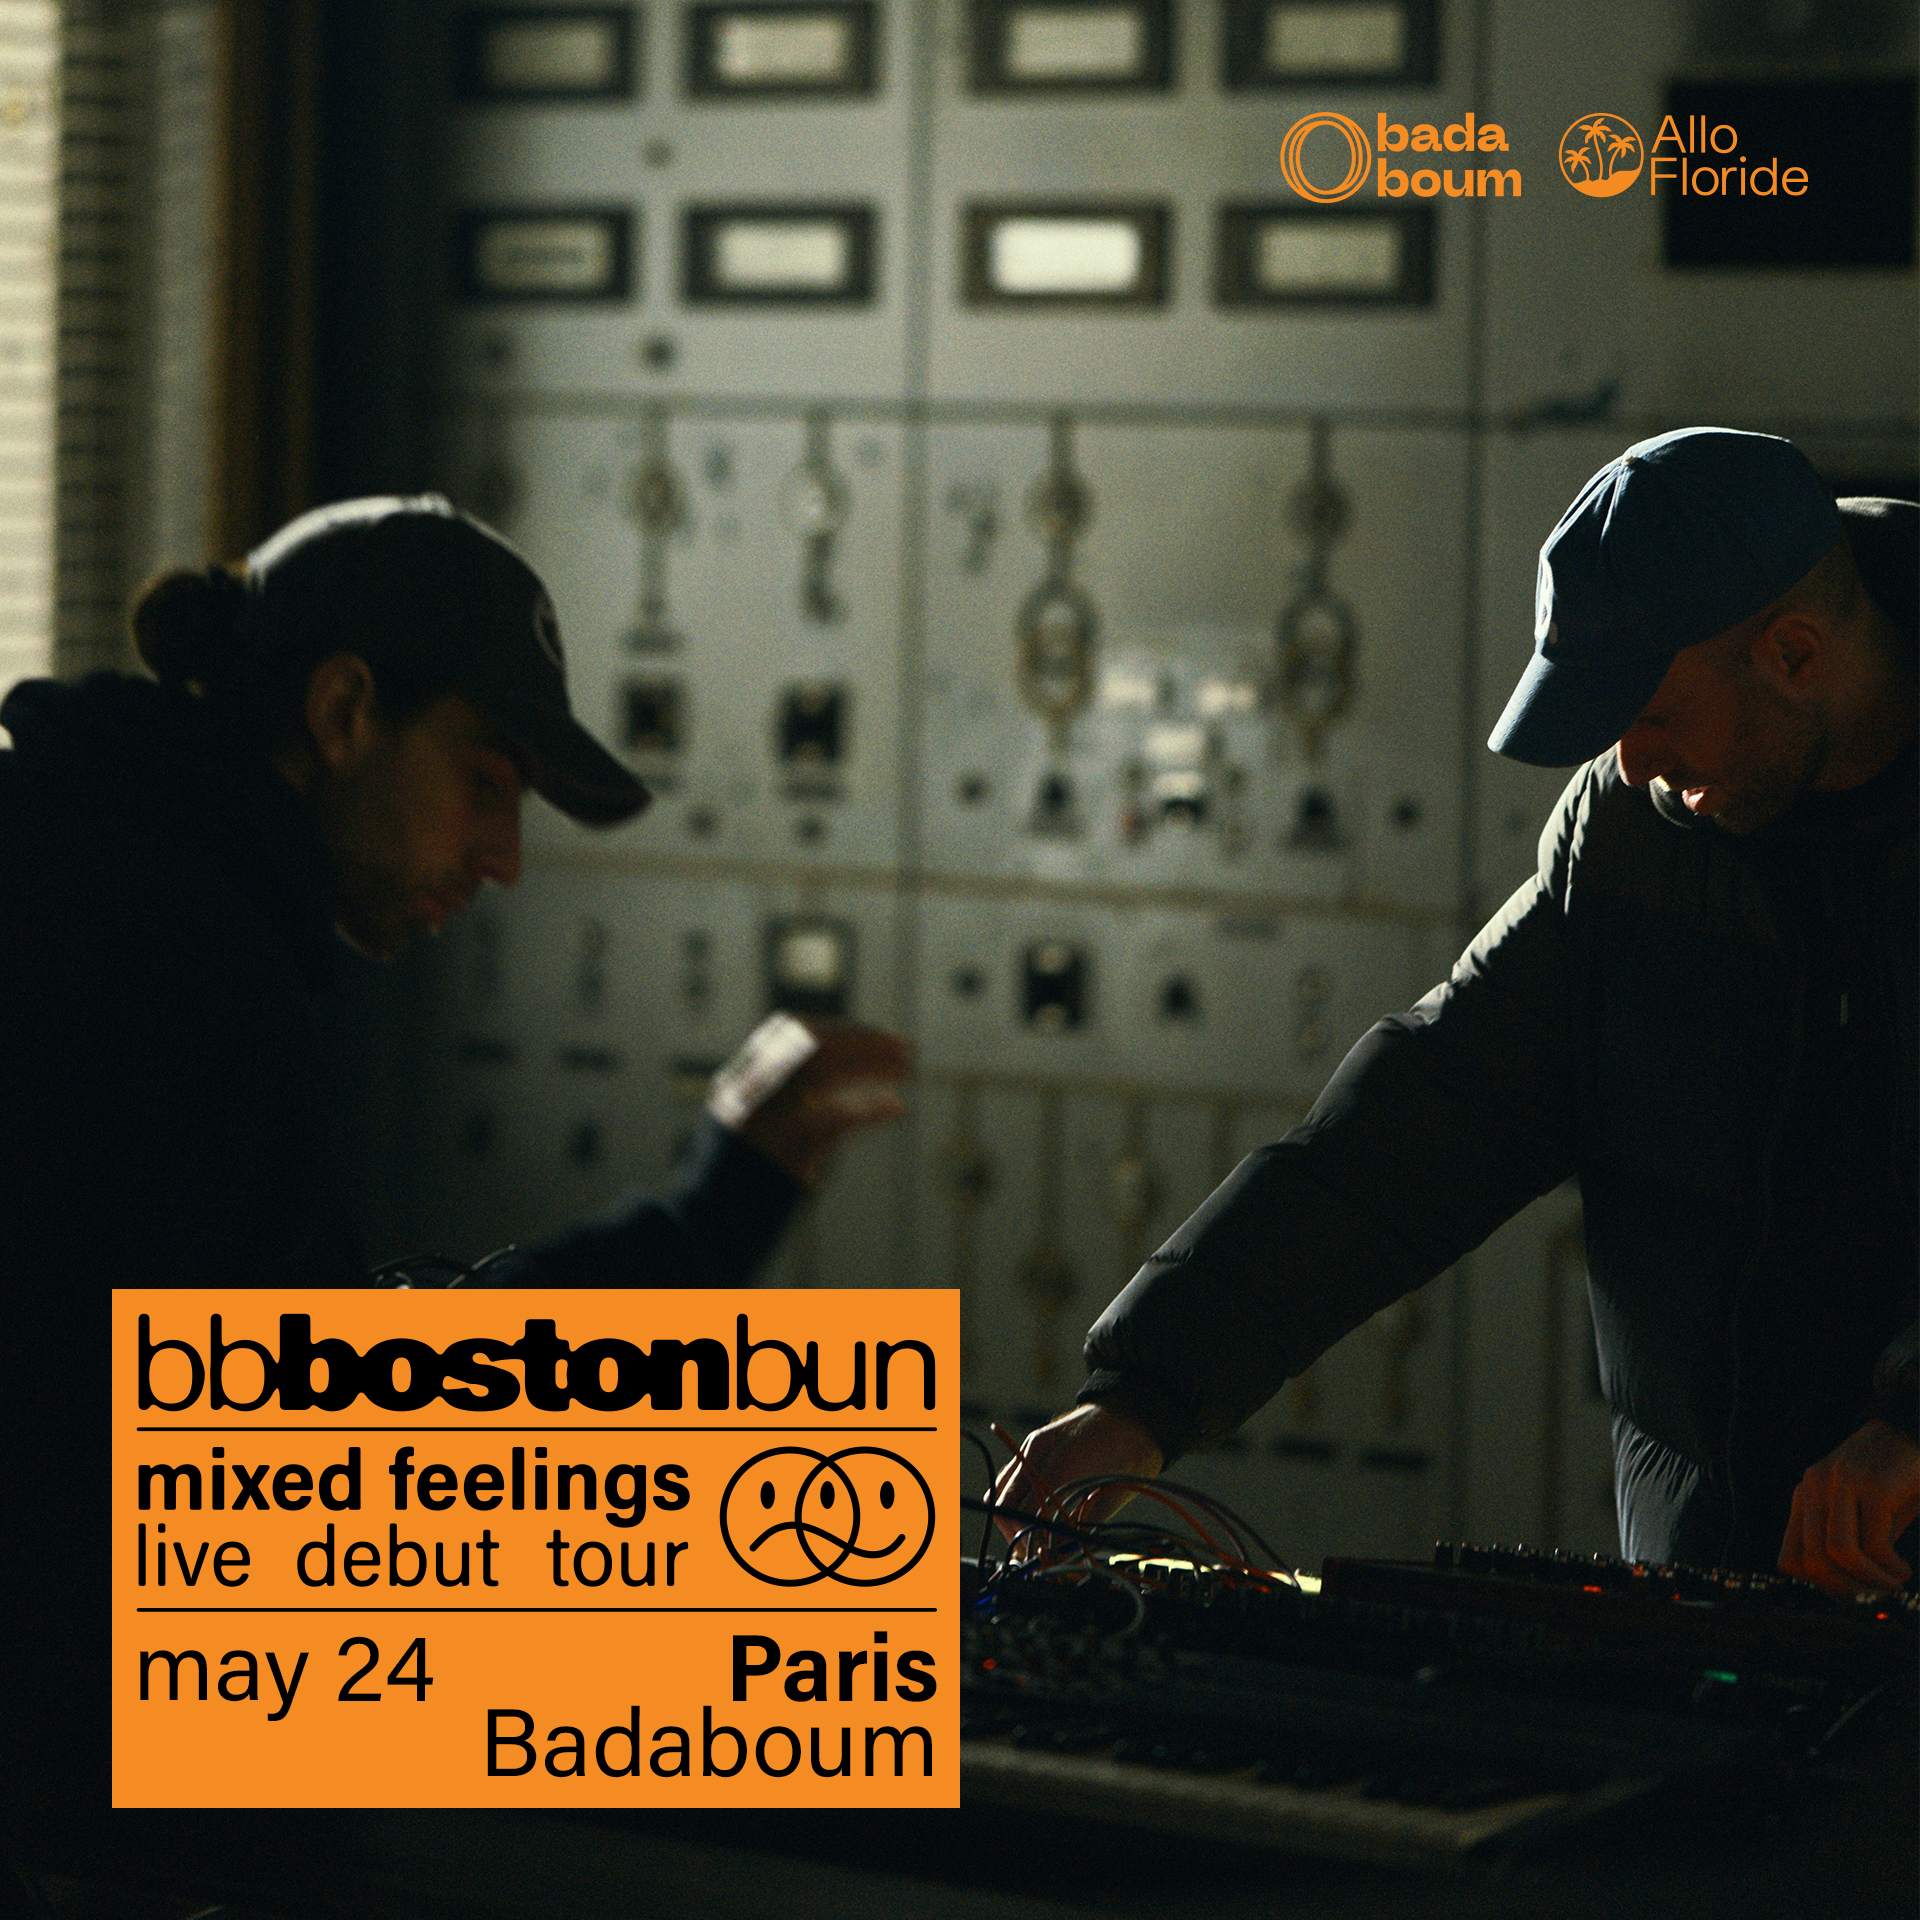 Boston Bun (live) • Badaboum, Paris - フライヤー表